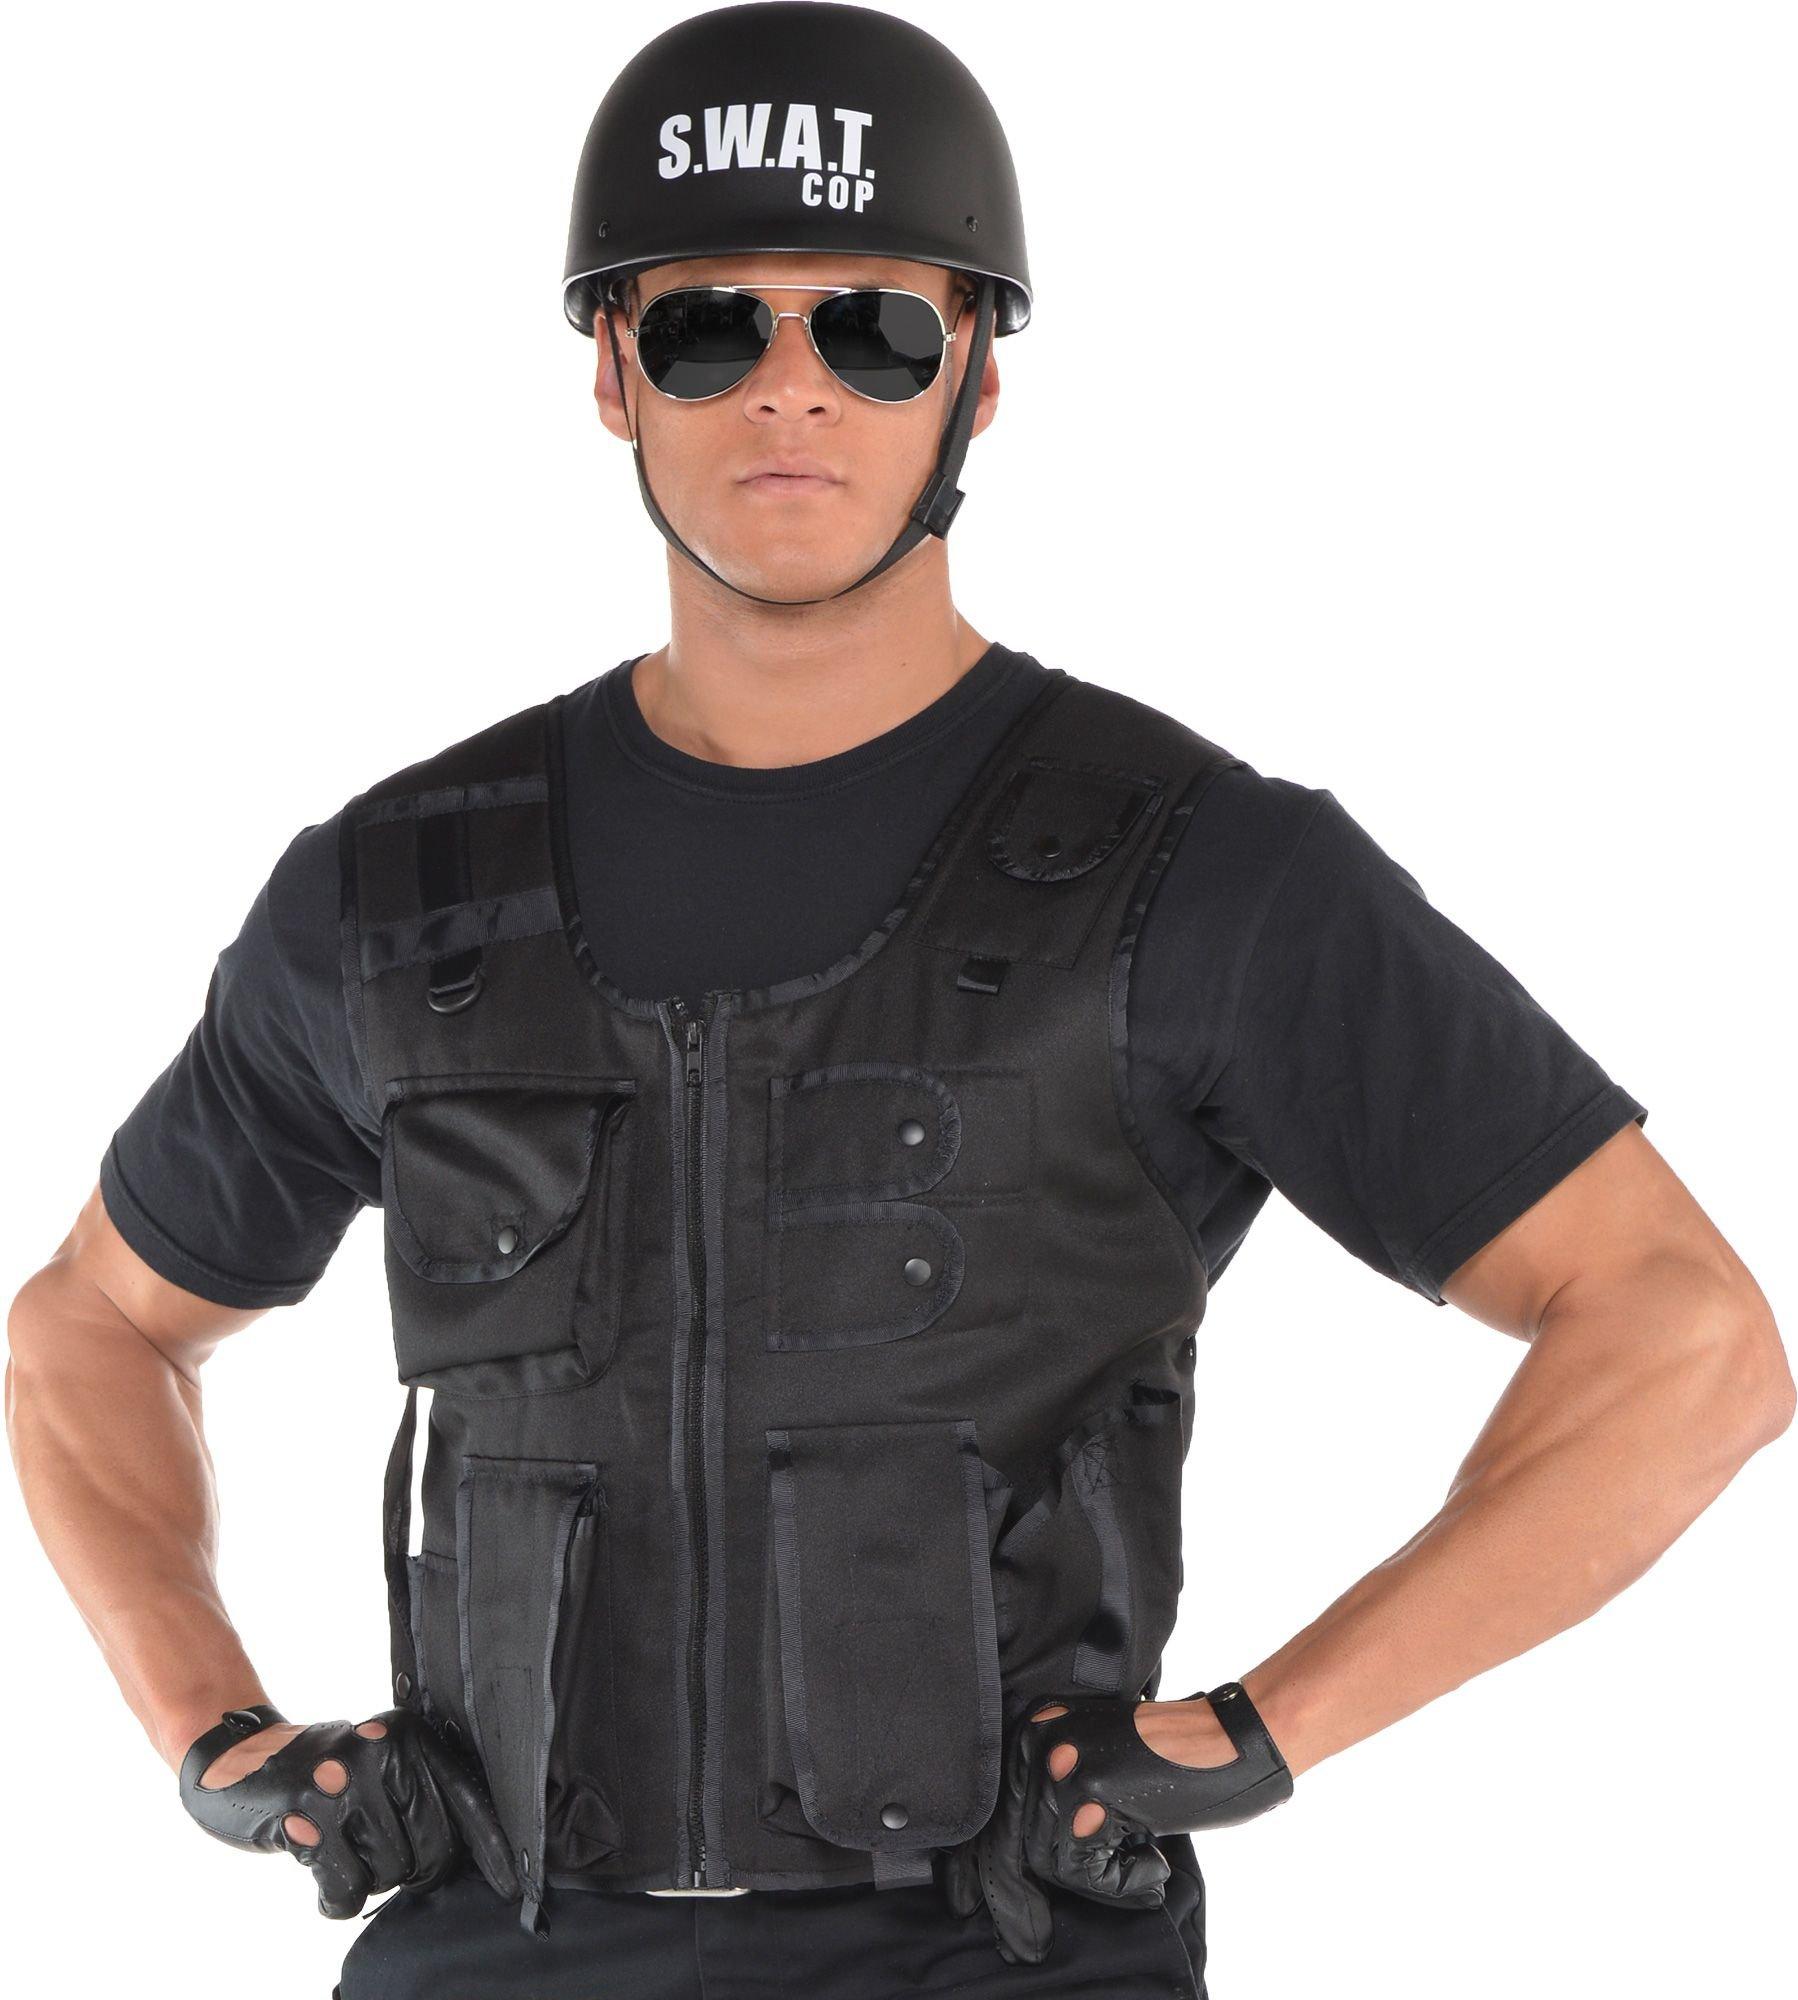 swat gear for kids